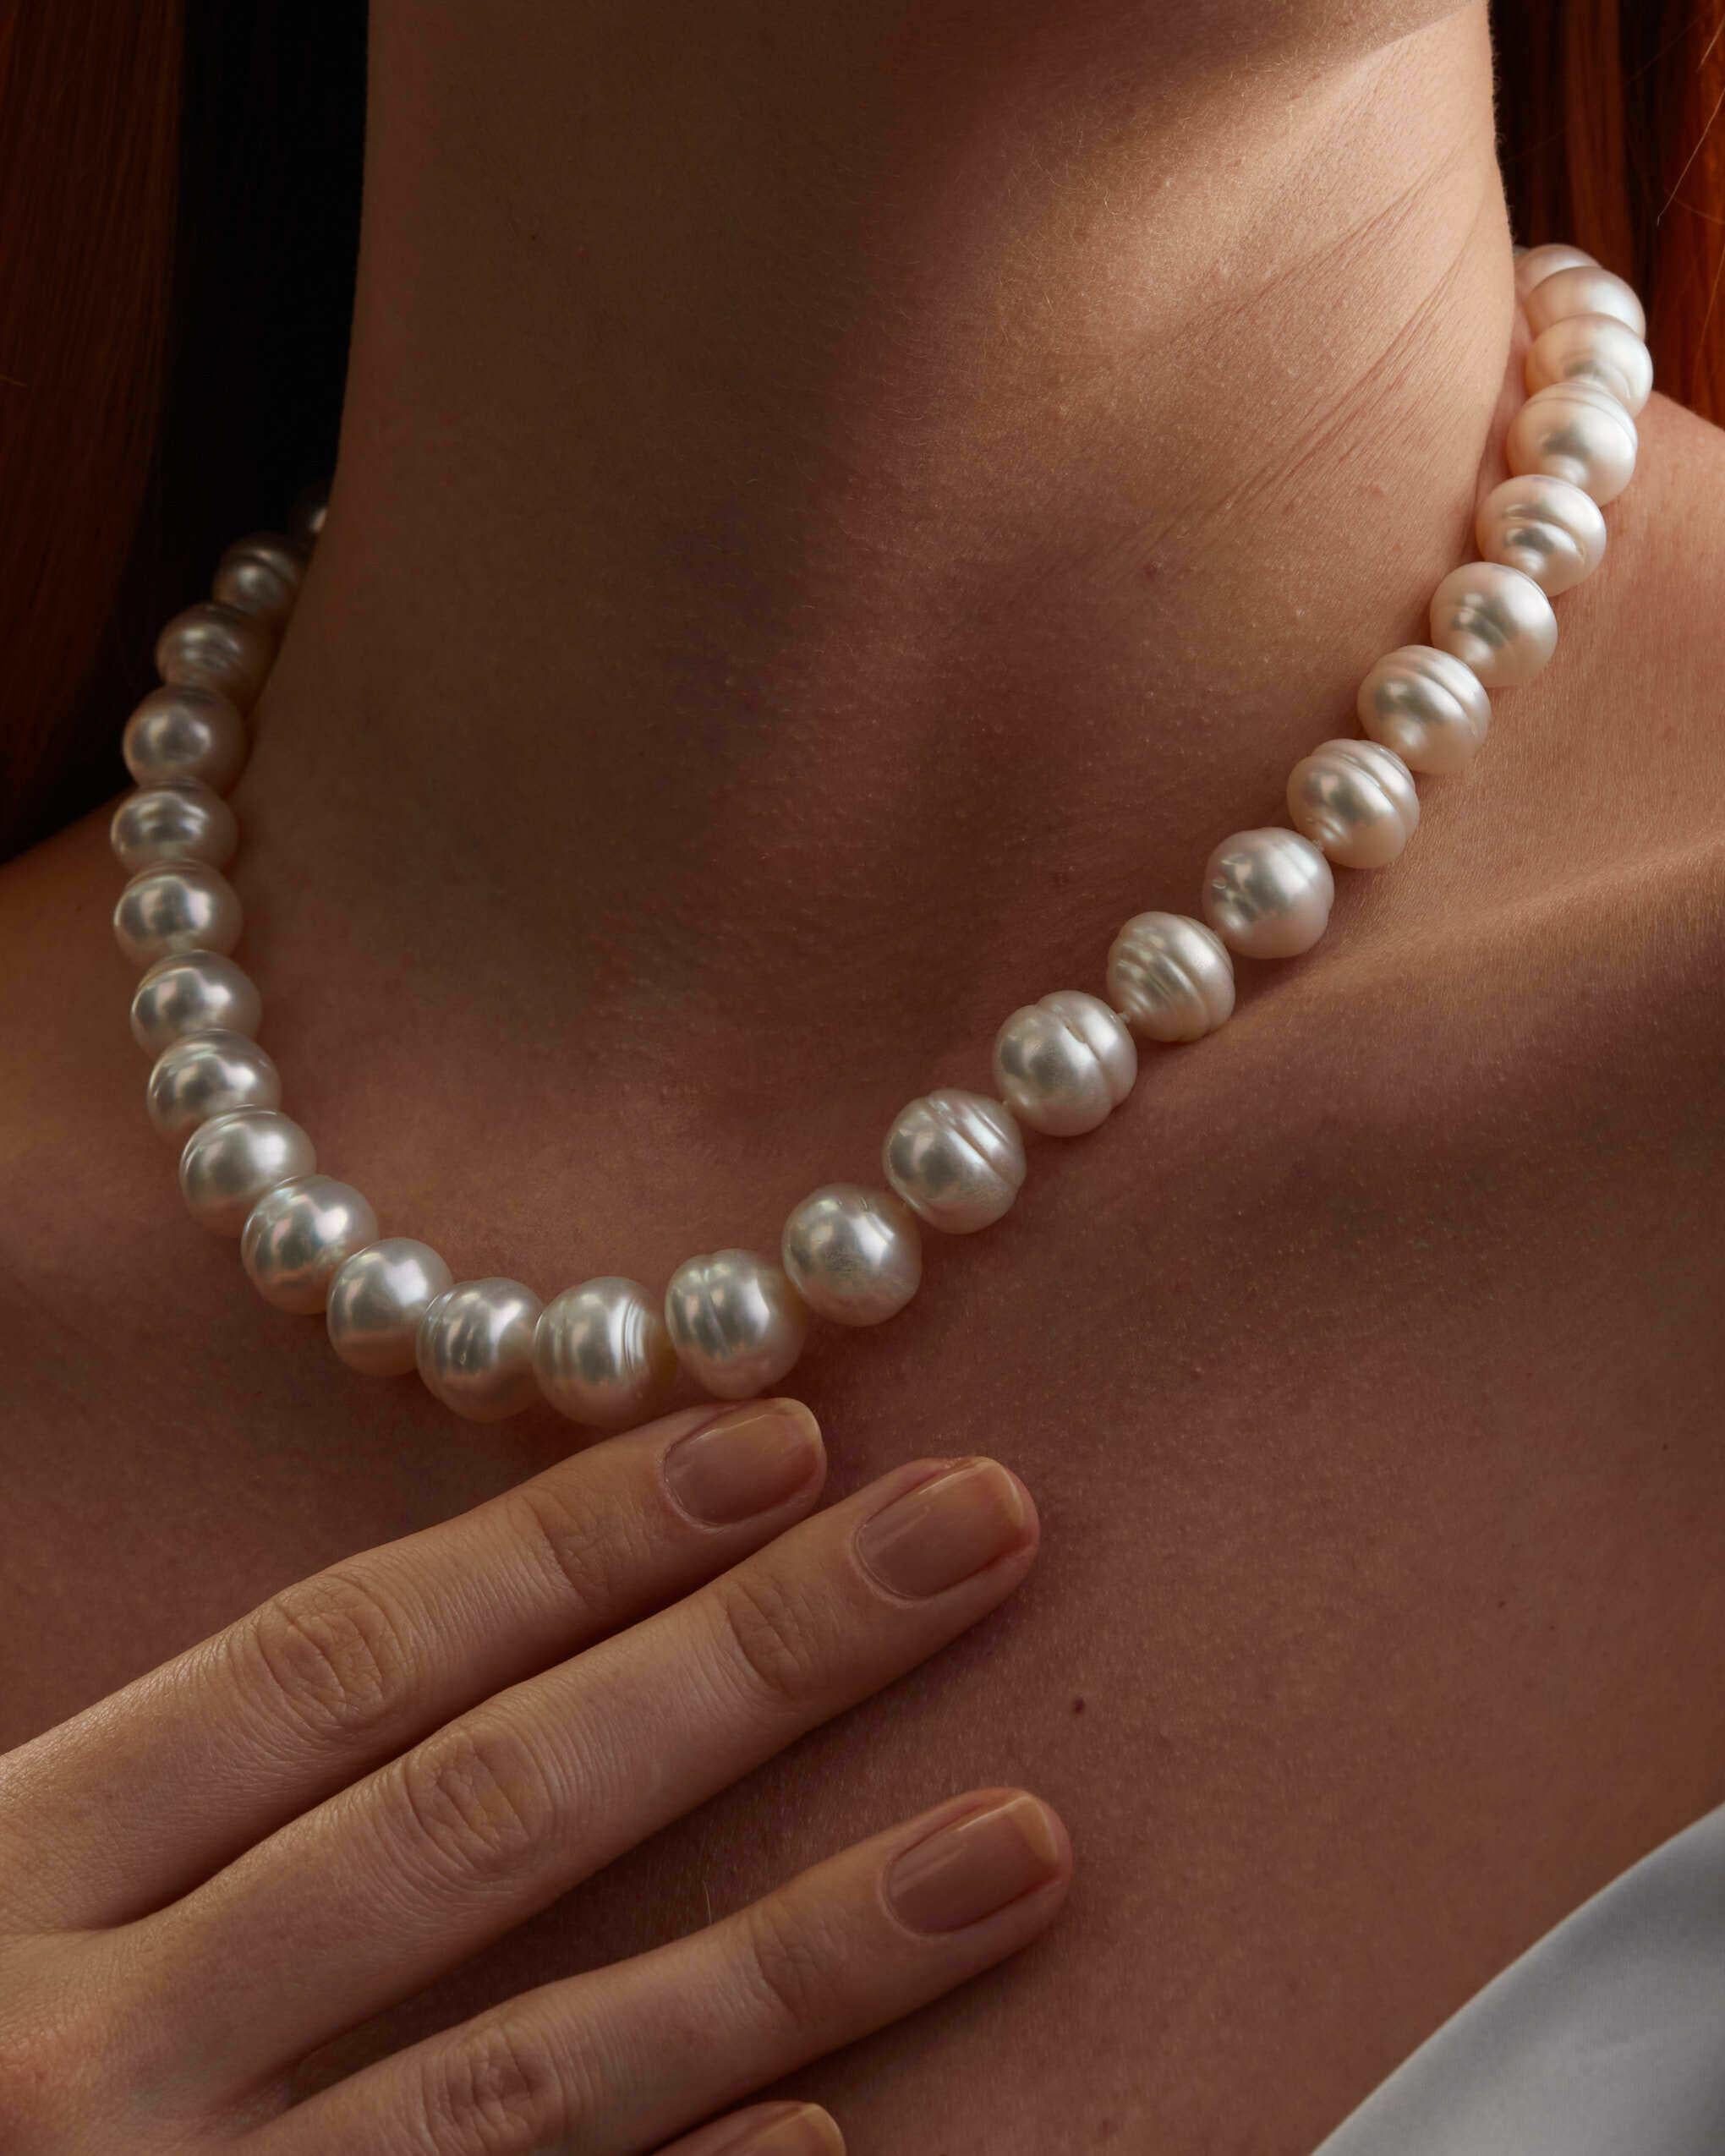 Eine wunderschöne australische Südsee Perlen Strang Halskette.

Es gibt nur eine Möglichkeit, eine so universelle und ikonische Halskette perfekt auszuführen. Luminöse Südseeperlen, die nachhaltig in den unberührten Gewässern vor der Küste